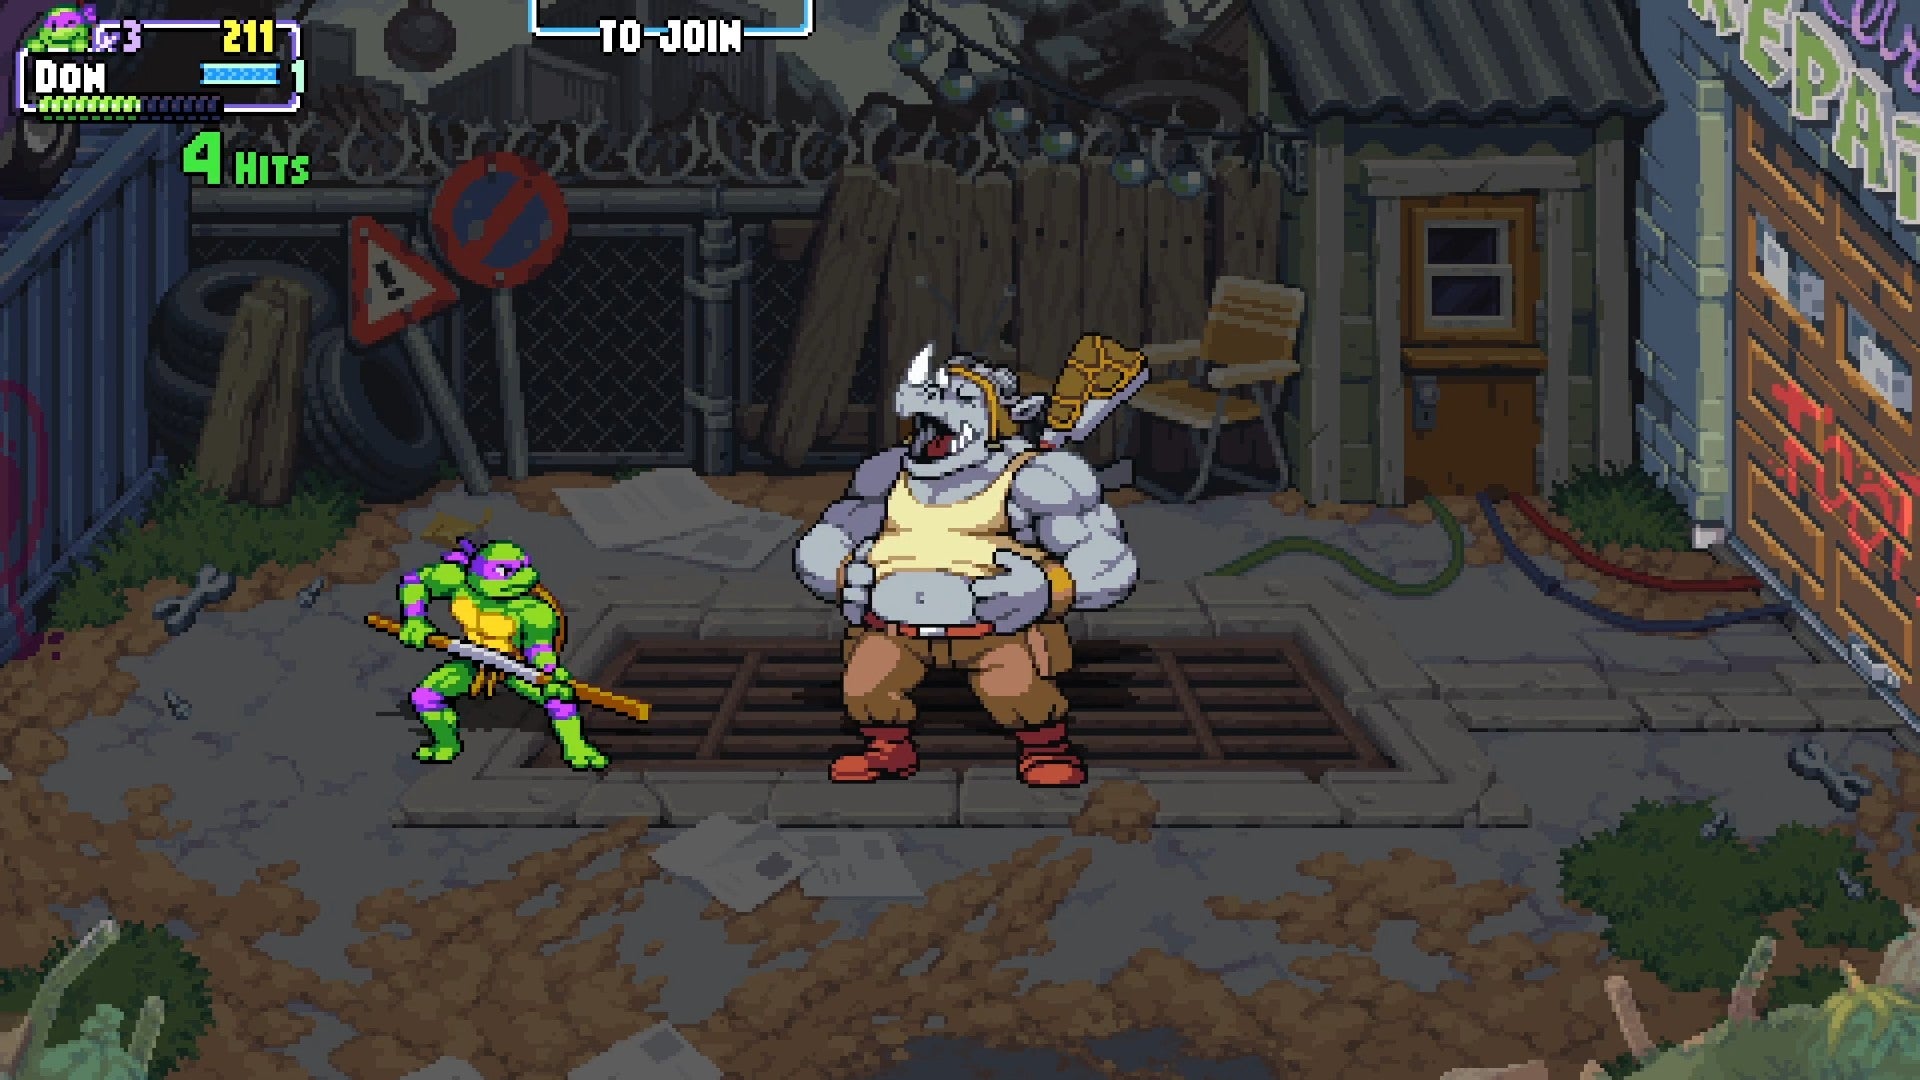 Donatello enfrenta um Rocksteady rindo em Teenage Mutant Ninja Turtles: Shredder's Revenge